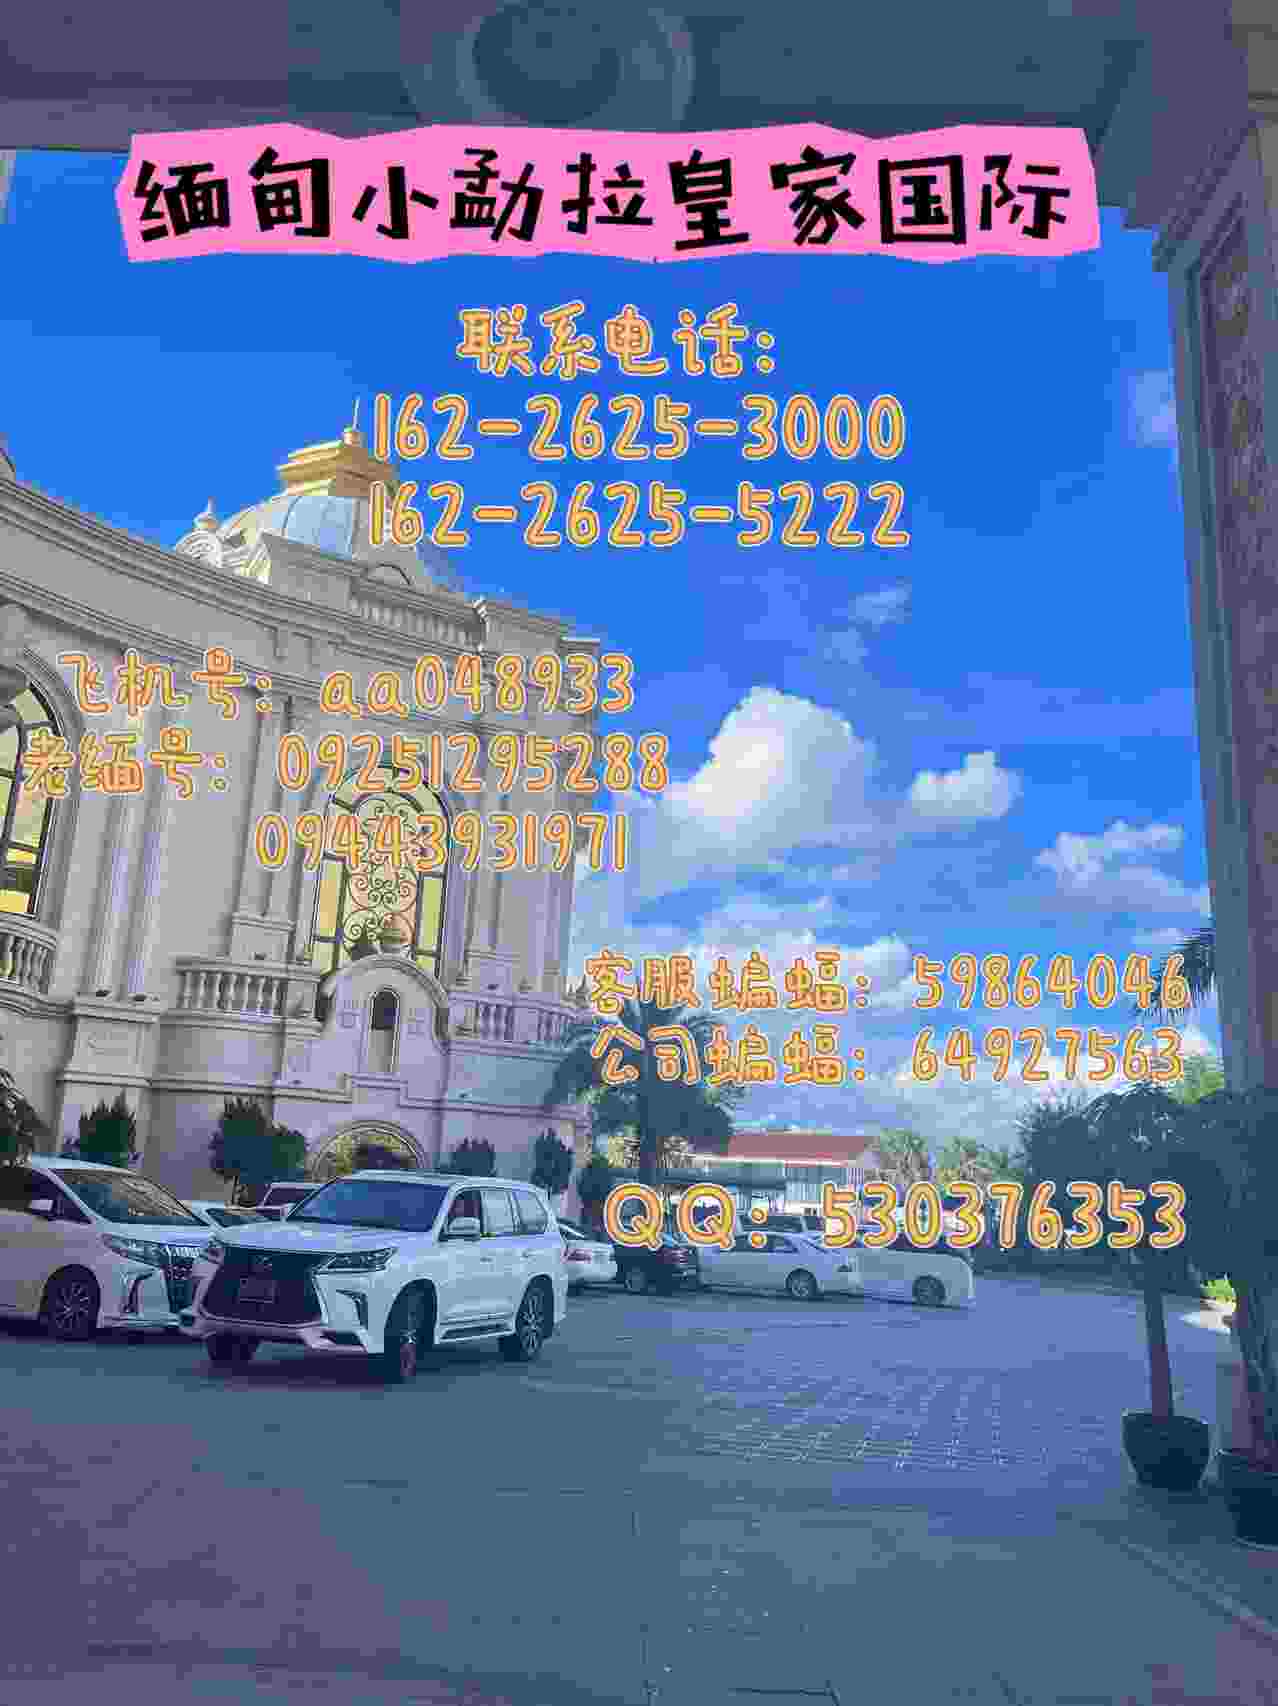 缅 甸小勐拉皇 家厅点击热 线开户咨询电话：162-2625-3000